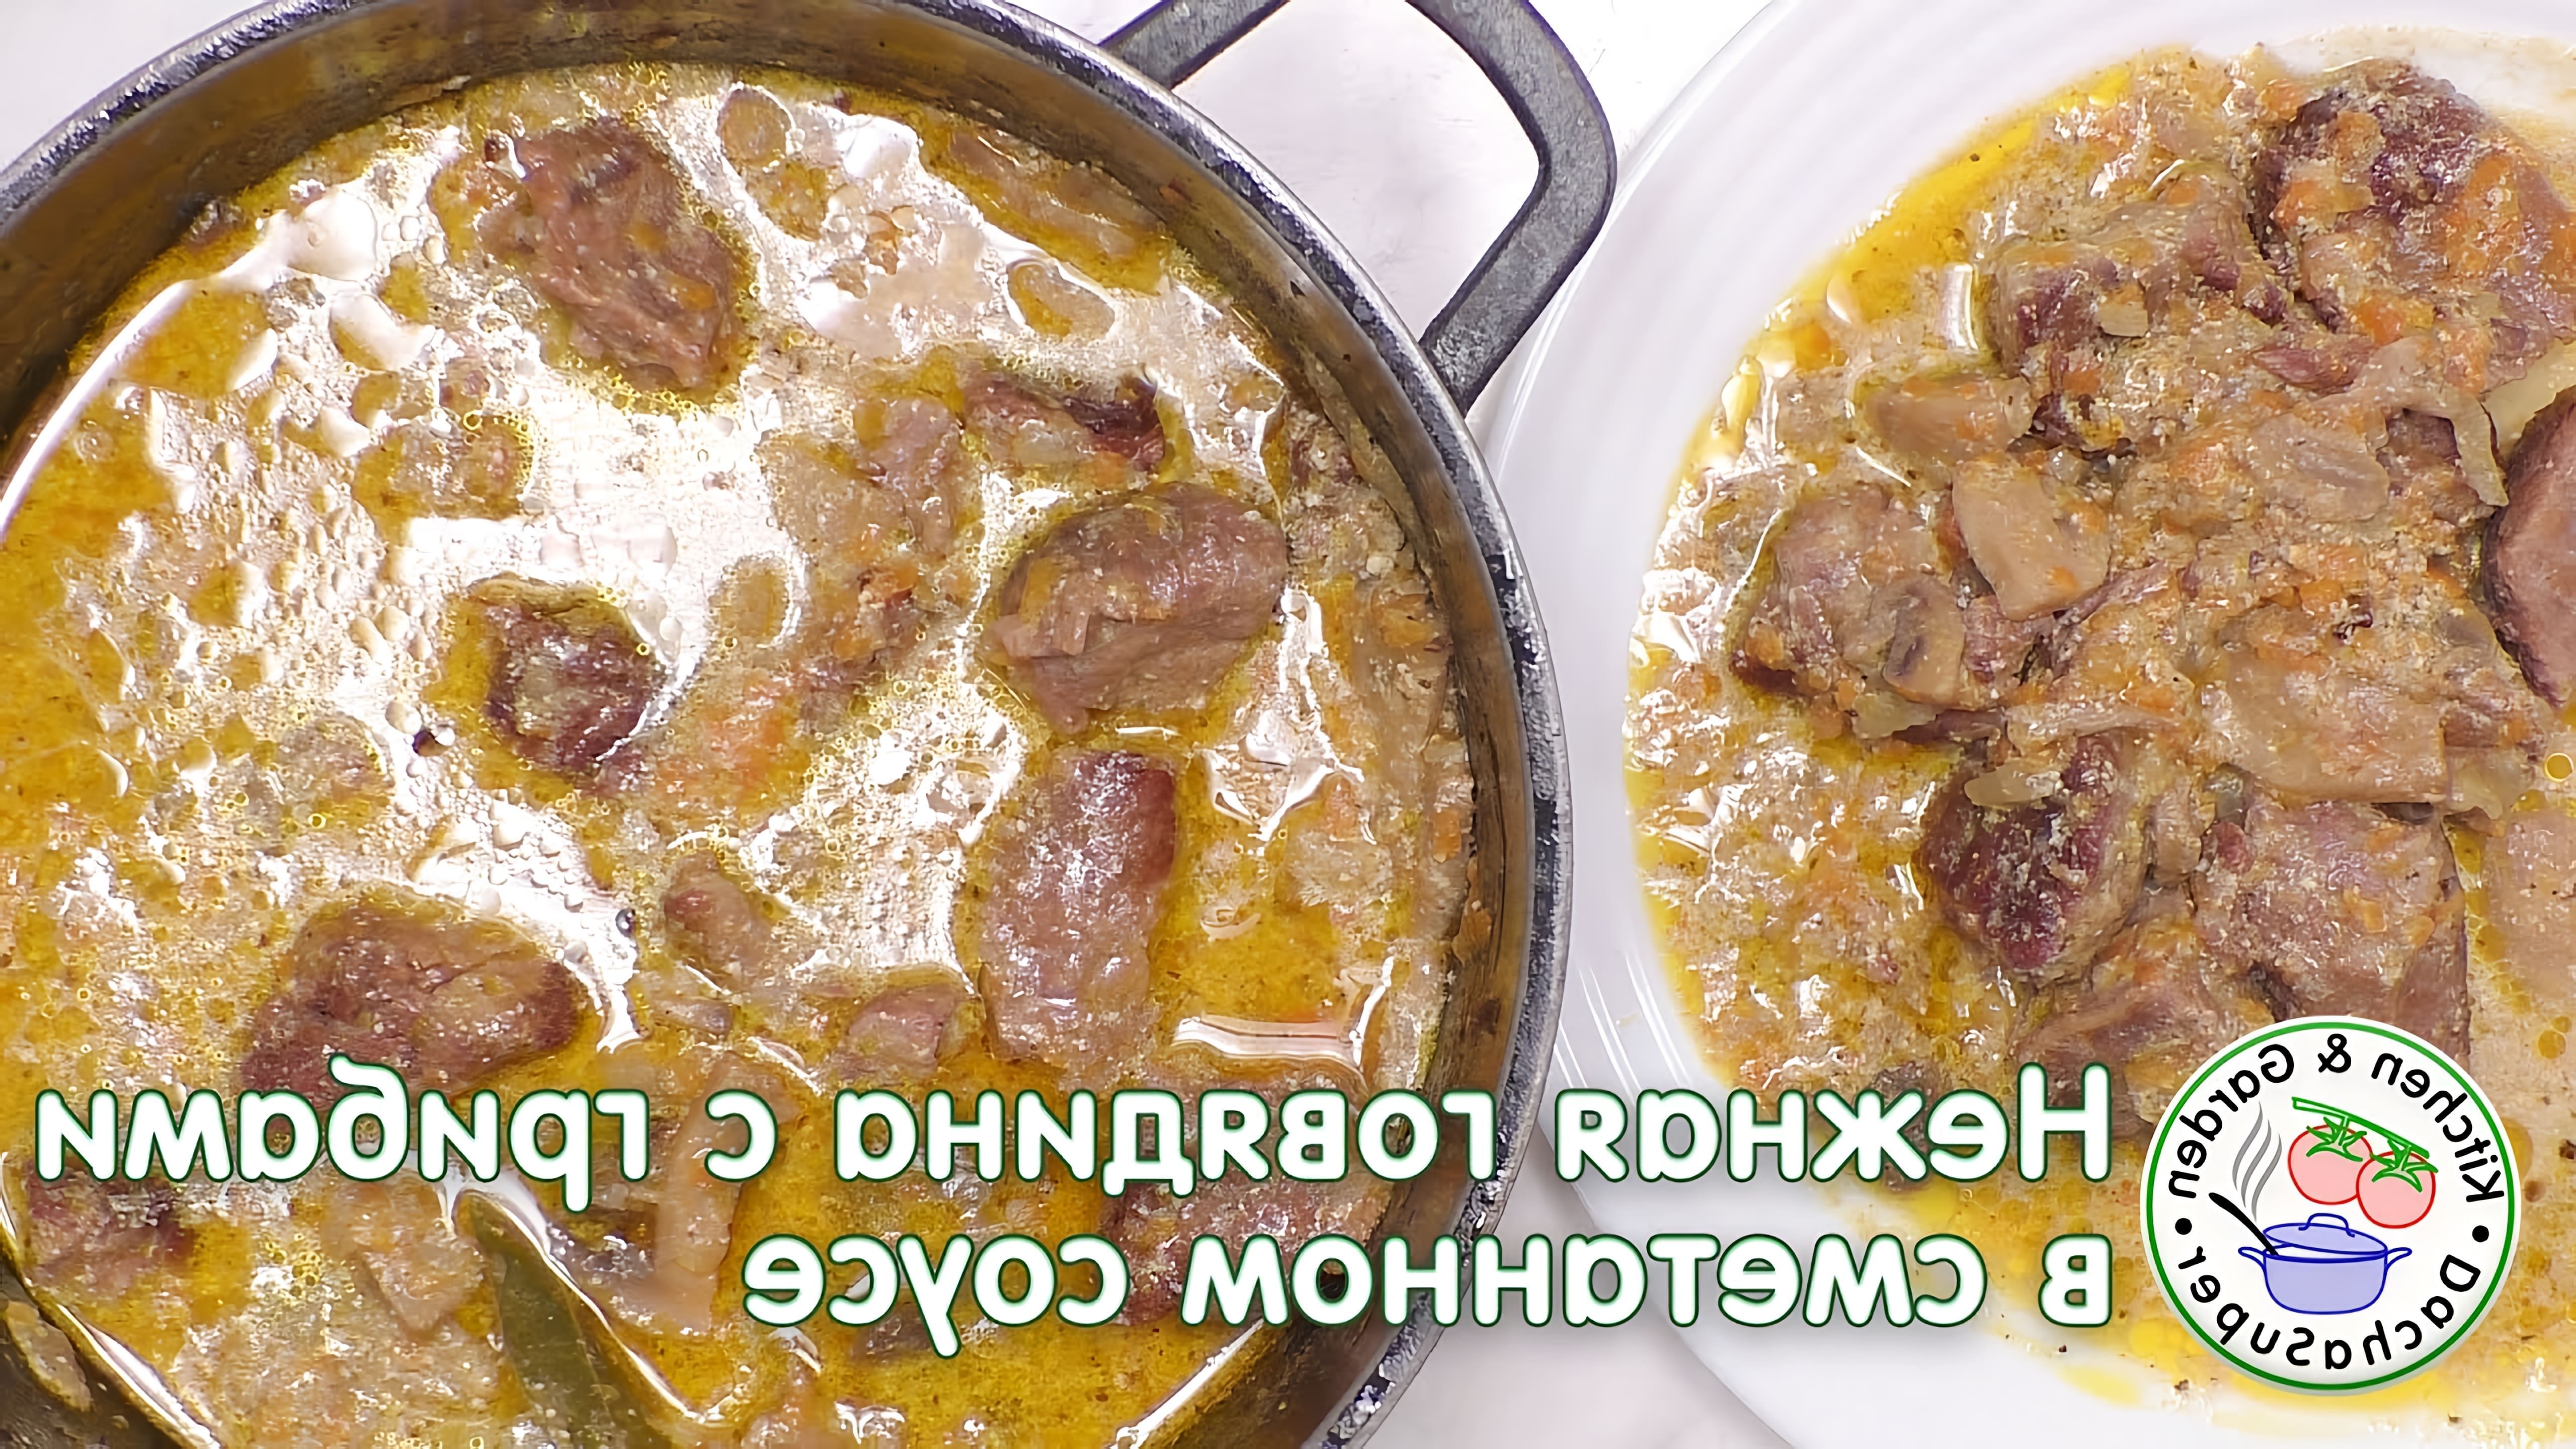 В данном видео демонстрируется рецепт приготовления тушеной говядины с грибами в сметанном соусе